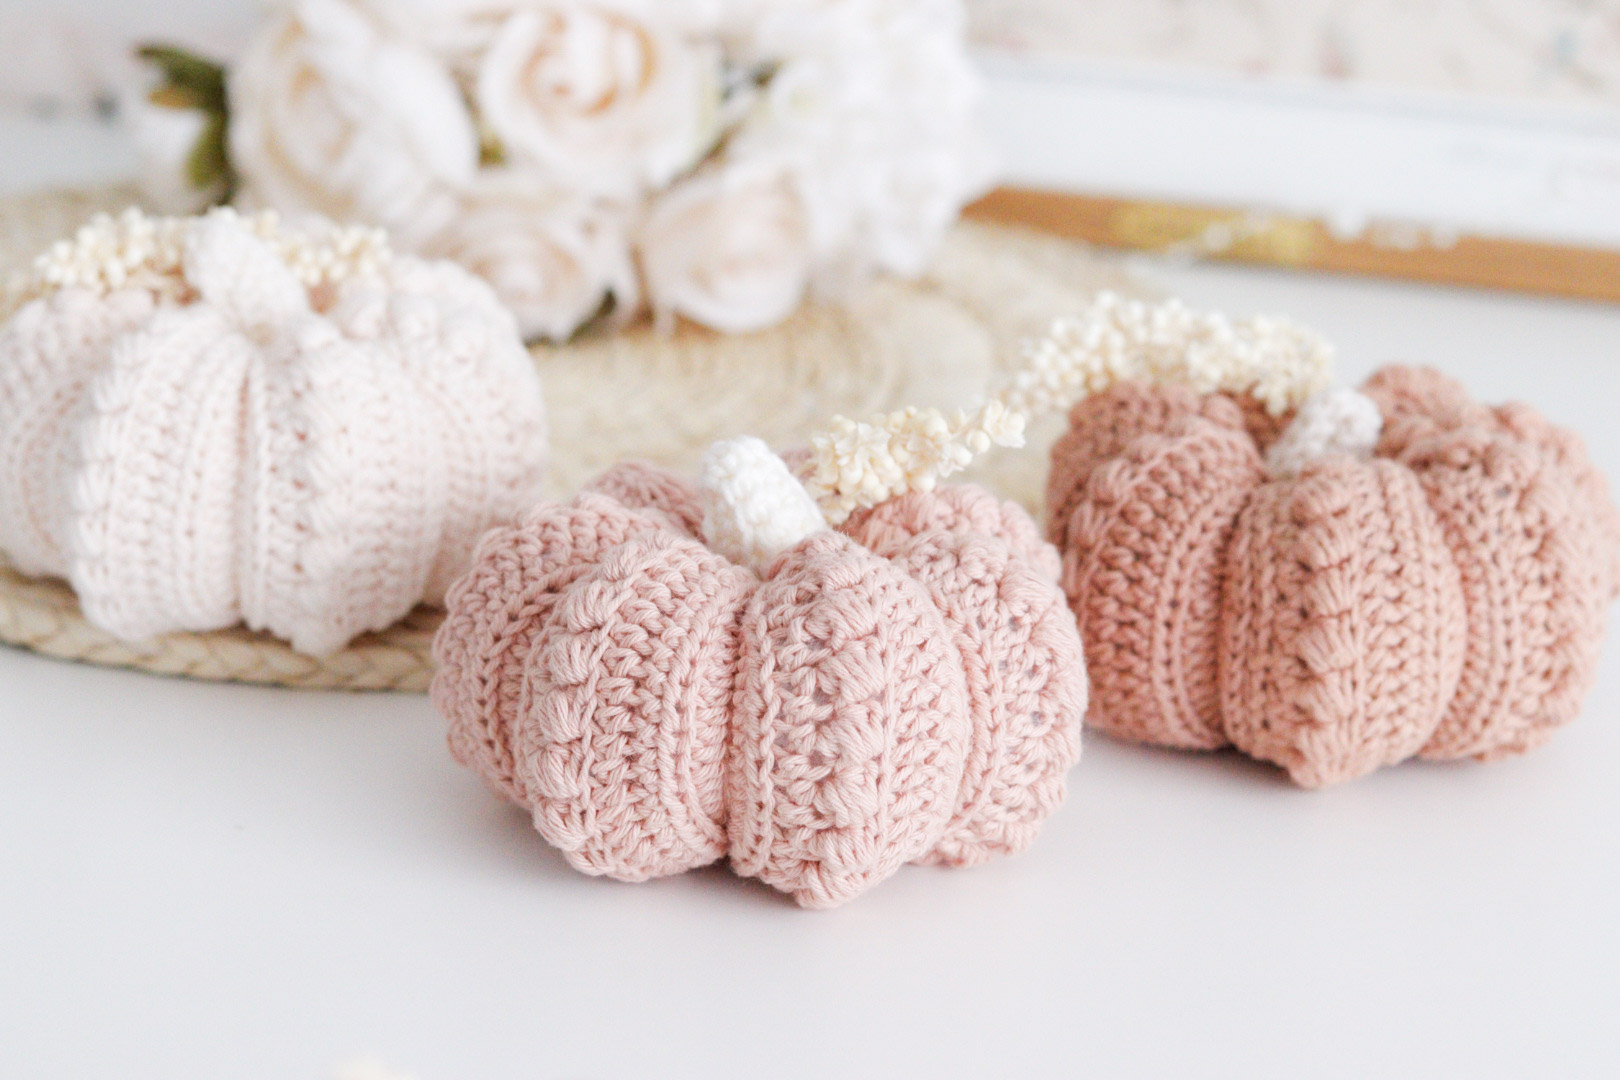 MATERIEL NECESSAIRE AU CROCHET - Crochet Pink Pumpkin